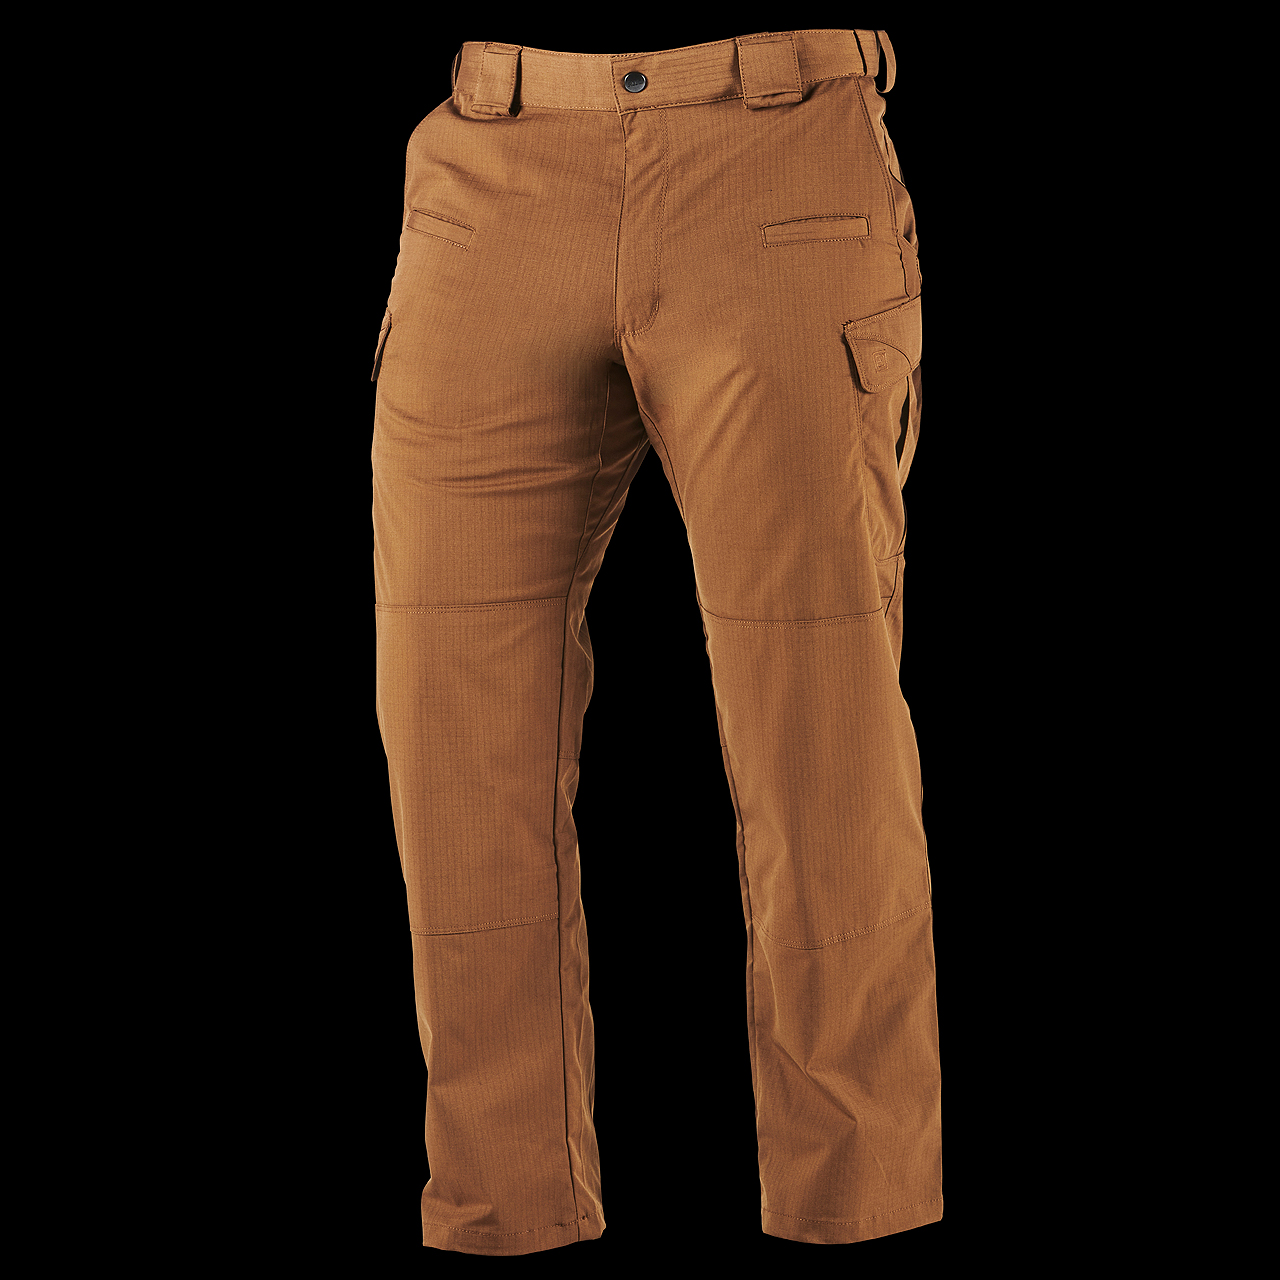 5.11 Stryke Pants / Trousers Tundra